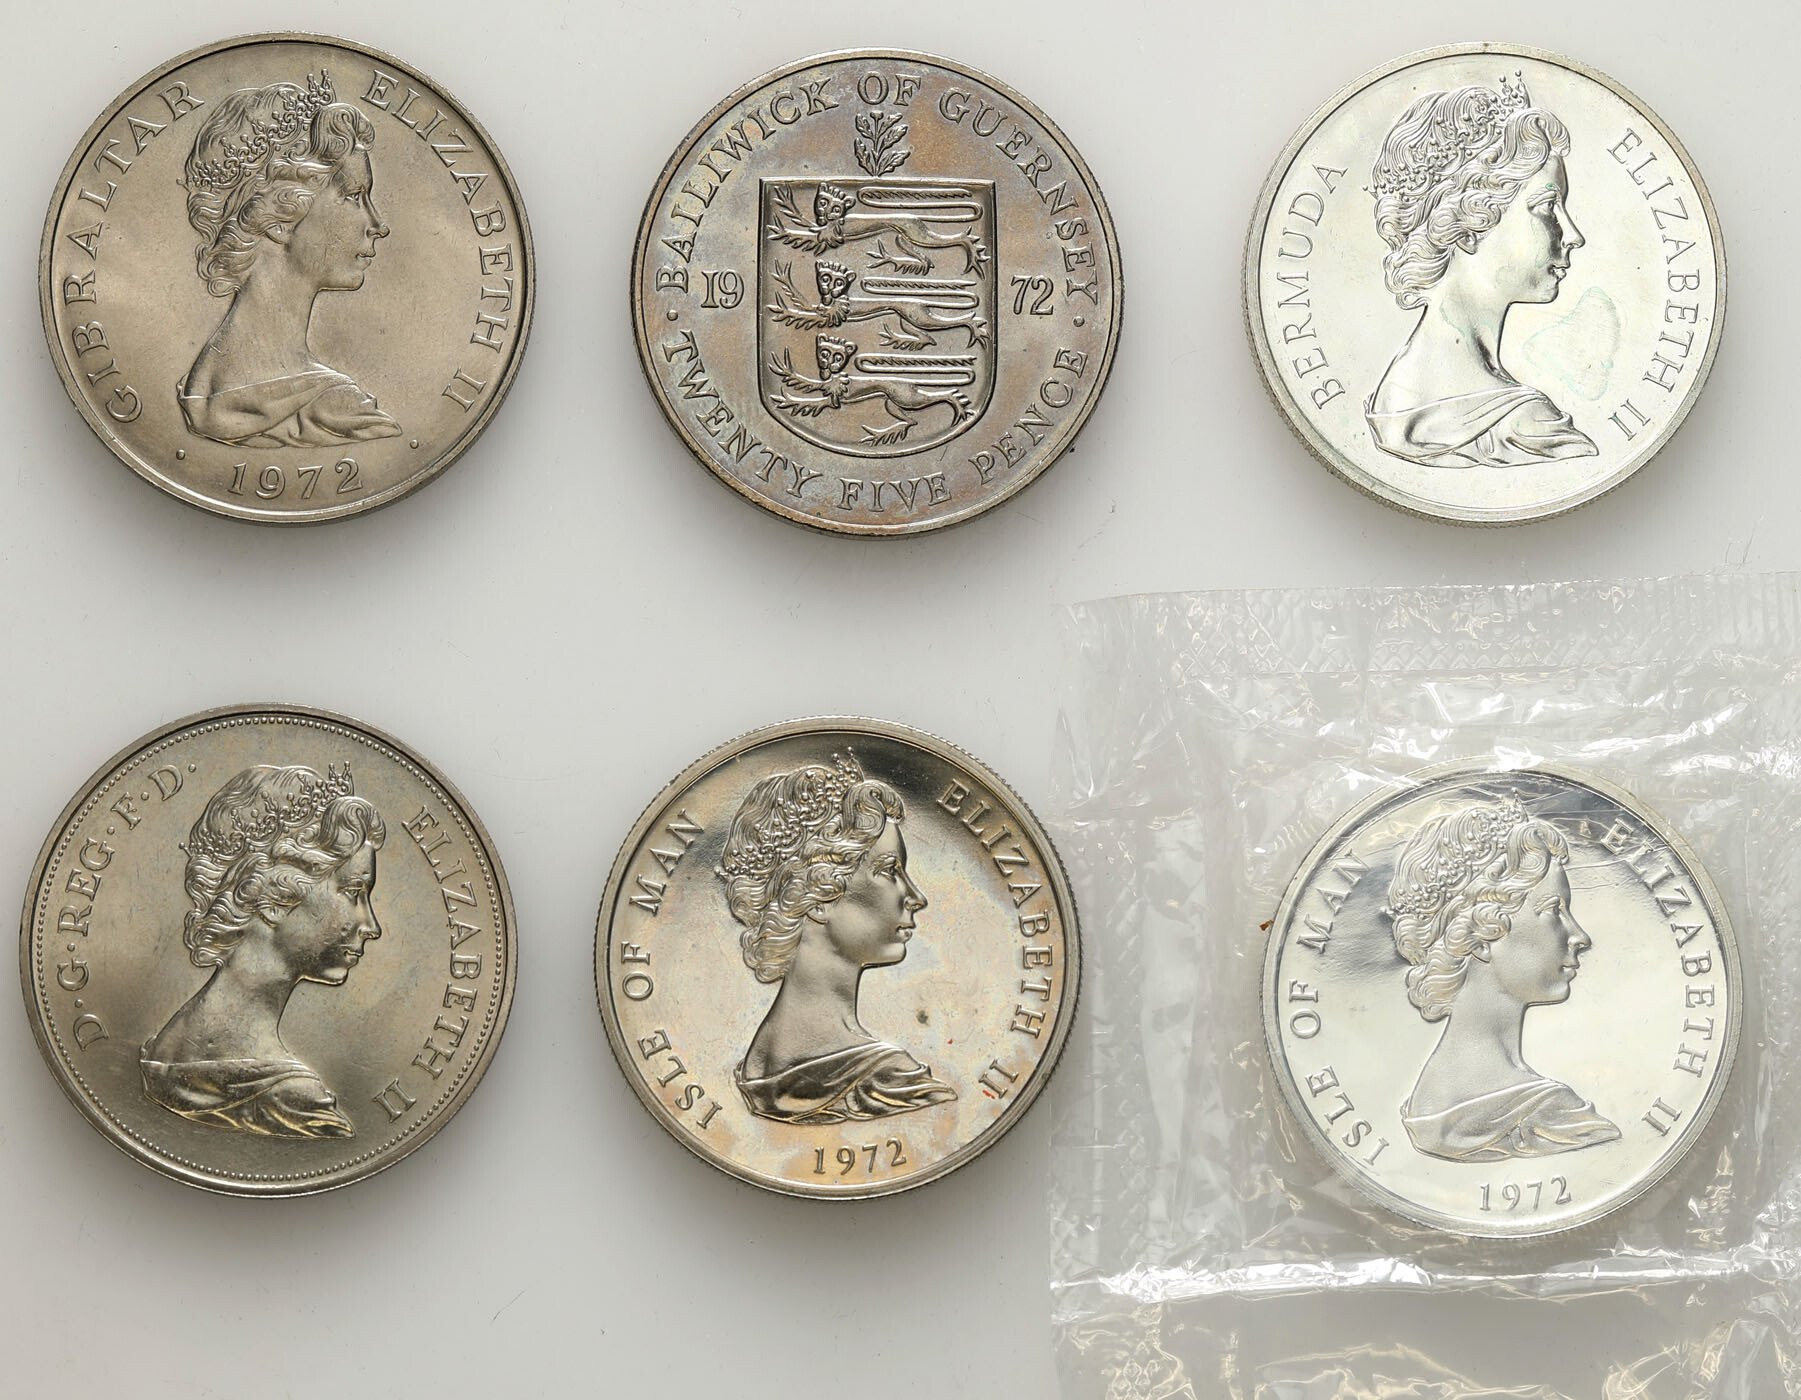  Wielka Brytania dla Guernsey, Bermudy, Wyspa Man, Gibraltar, zestaw 6 monet